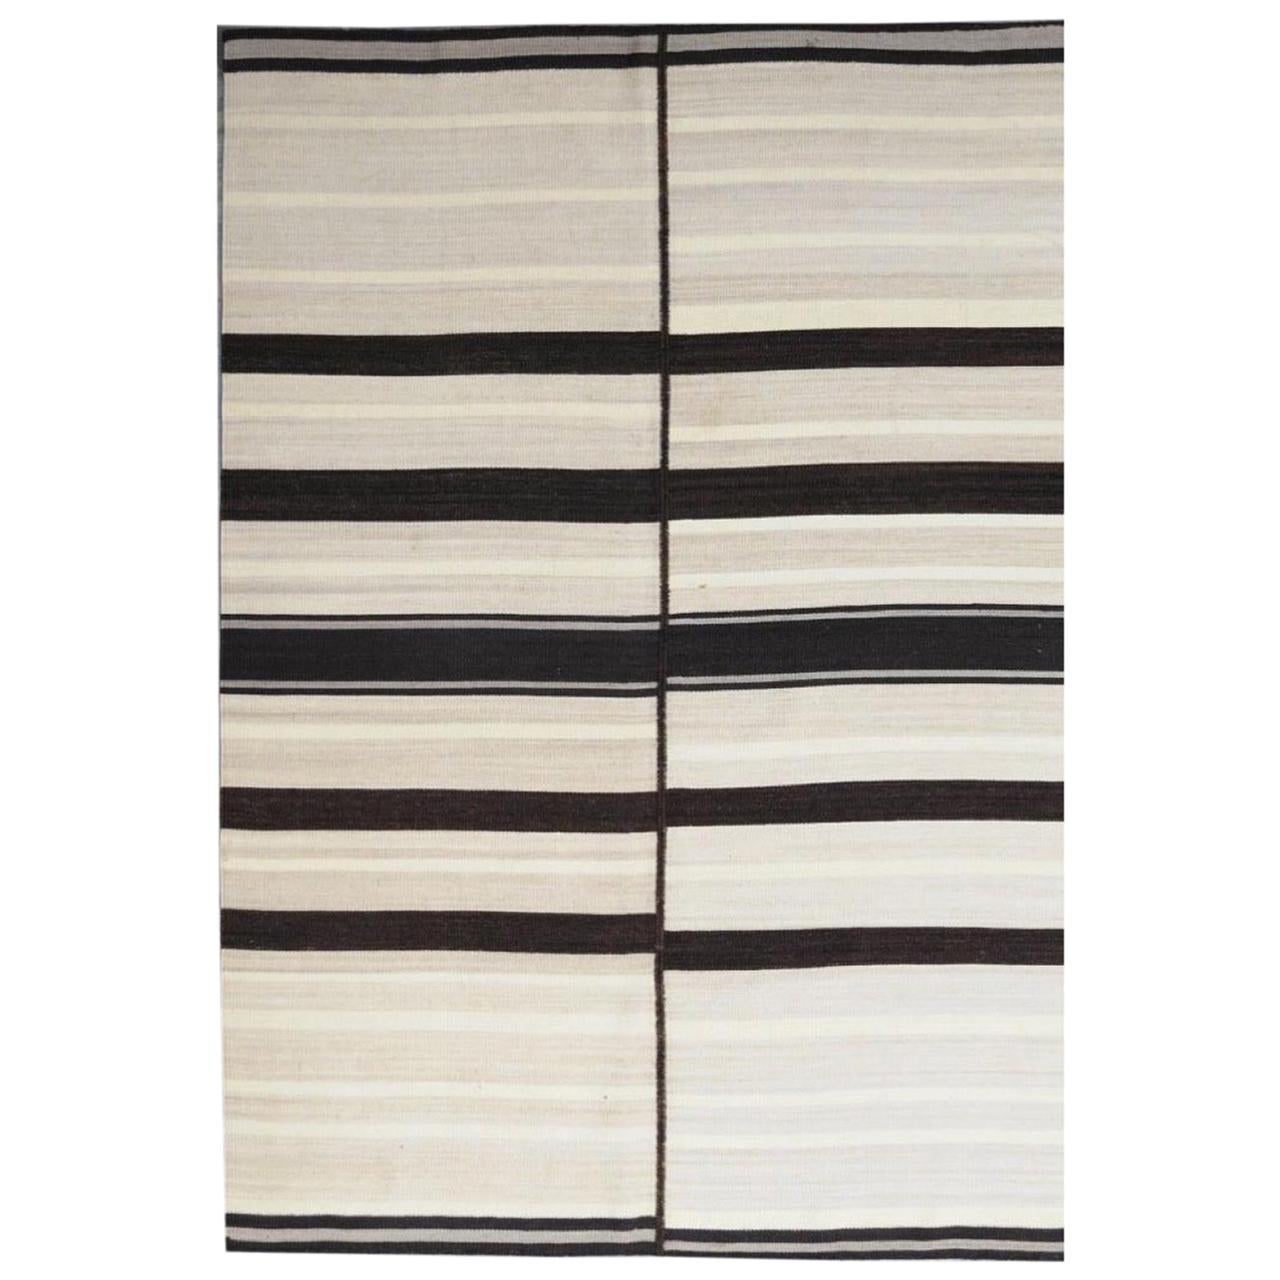 Nouveau tapis Kilim plat à motif tribal tissé à la main, taille 6 pieds 6 po. x 9 pieds 10 po.